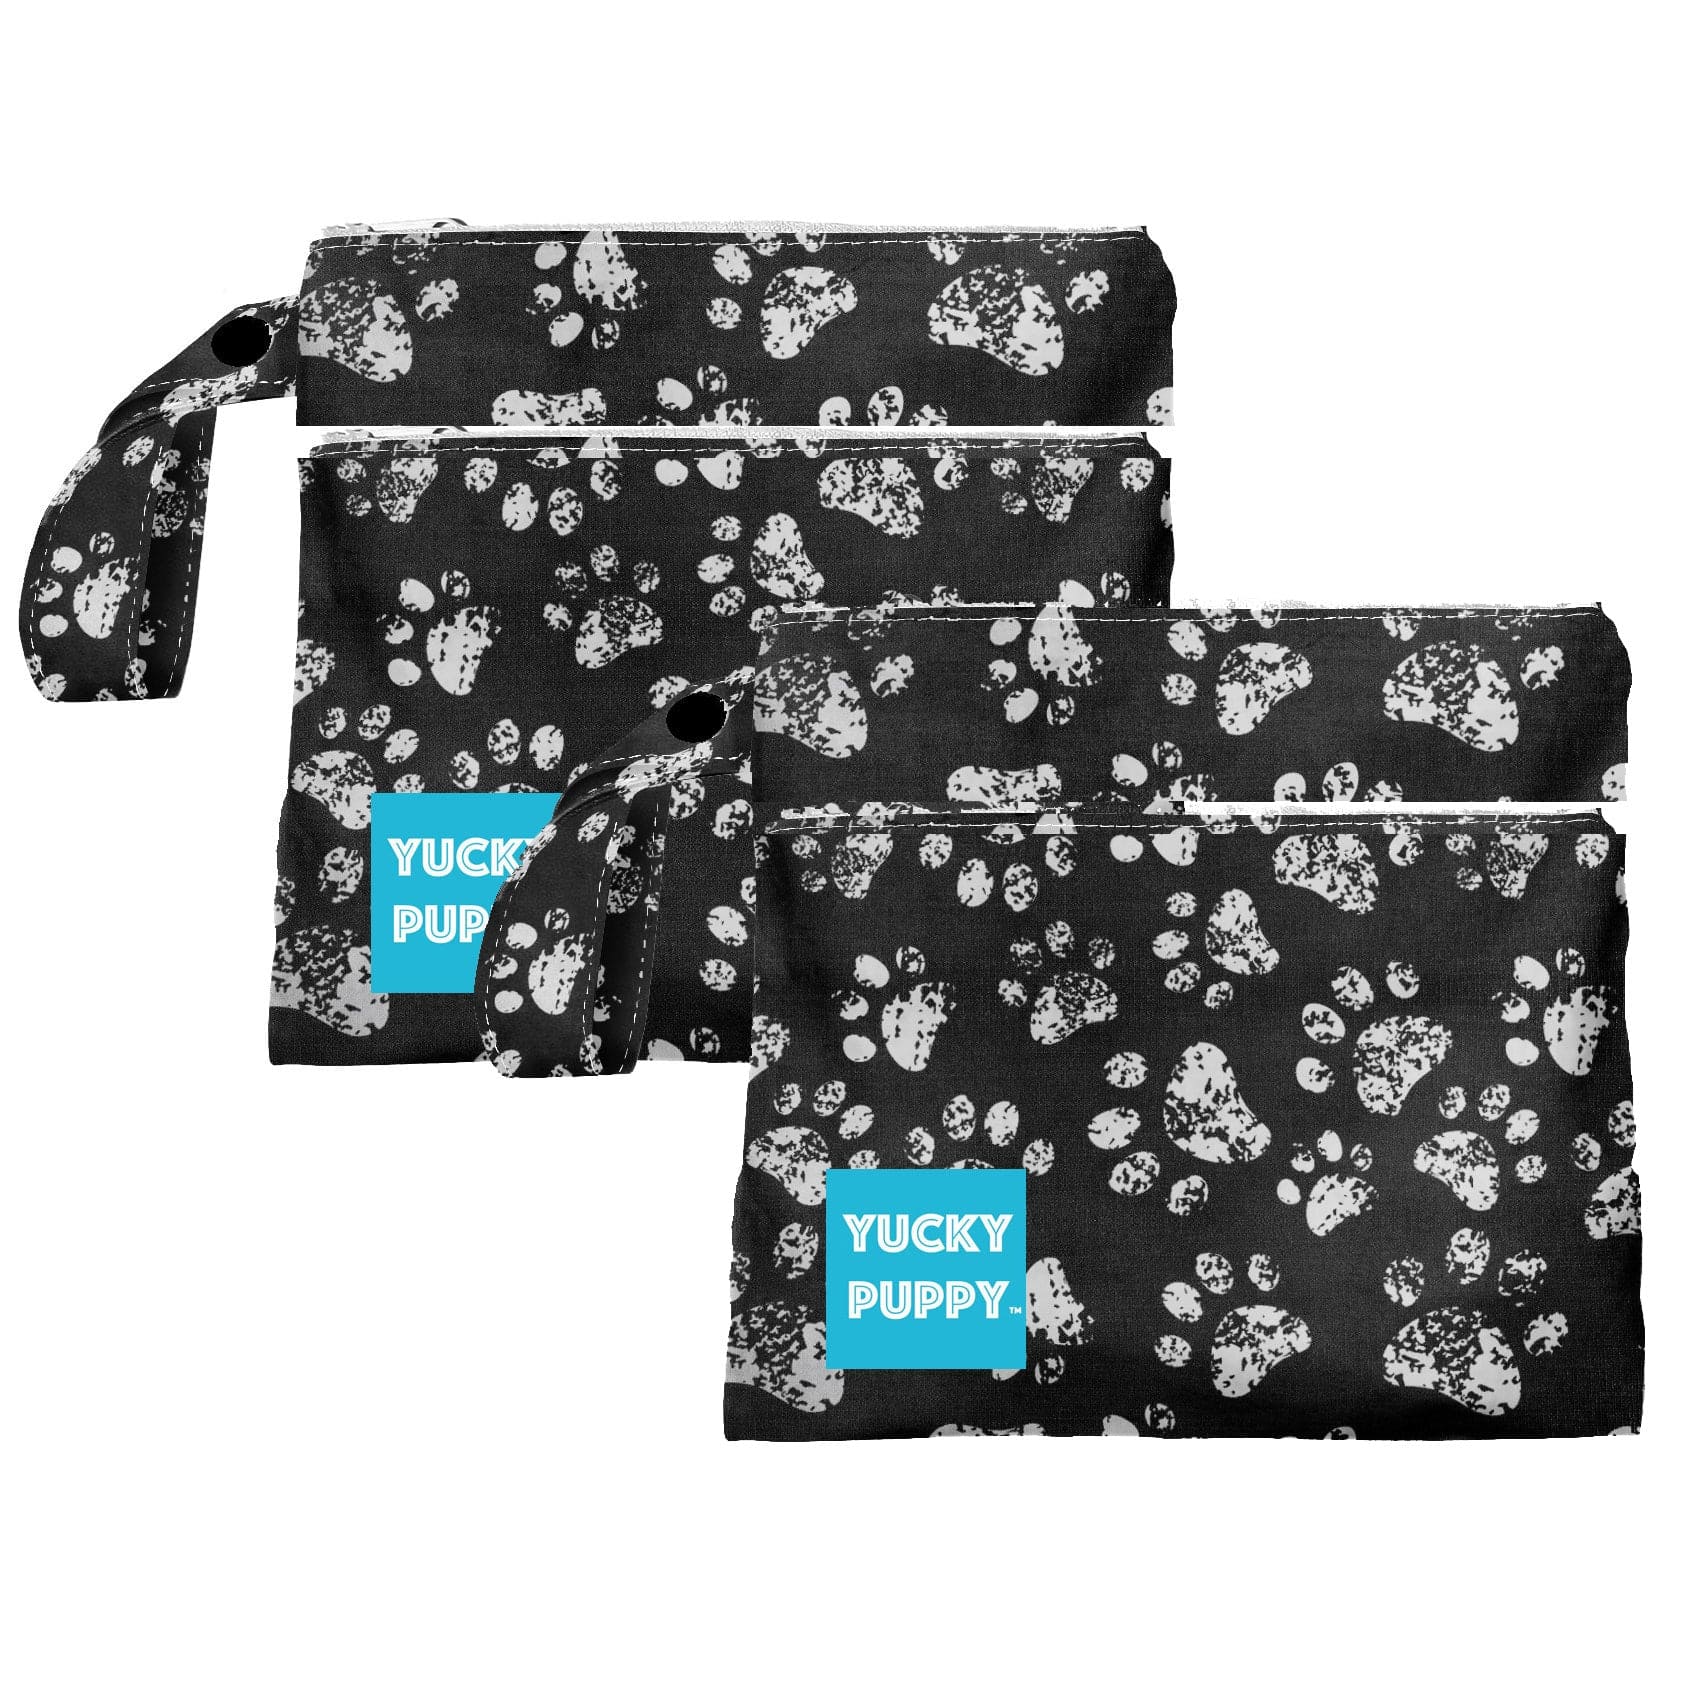 Poop Bag Holders  Zoomies – Molly & Co.